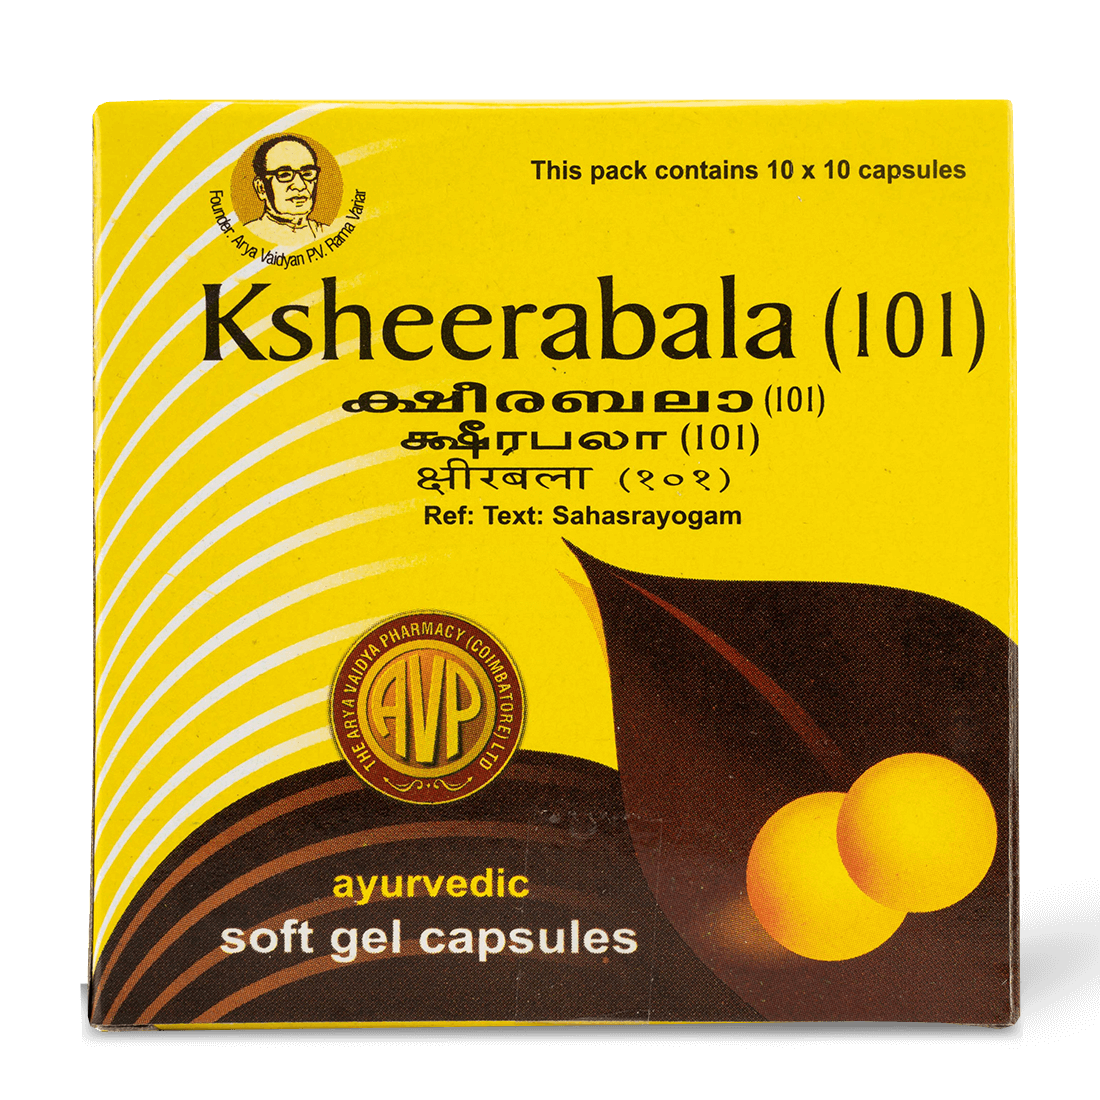 Ksheerabala (101) Capsule